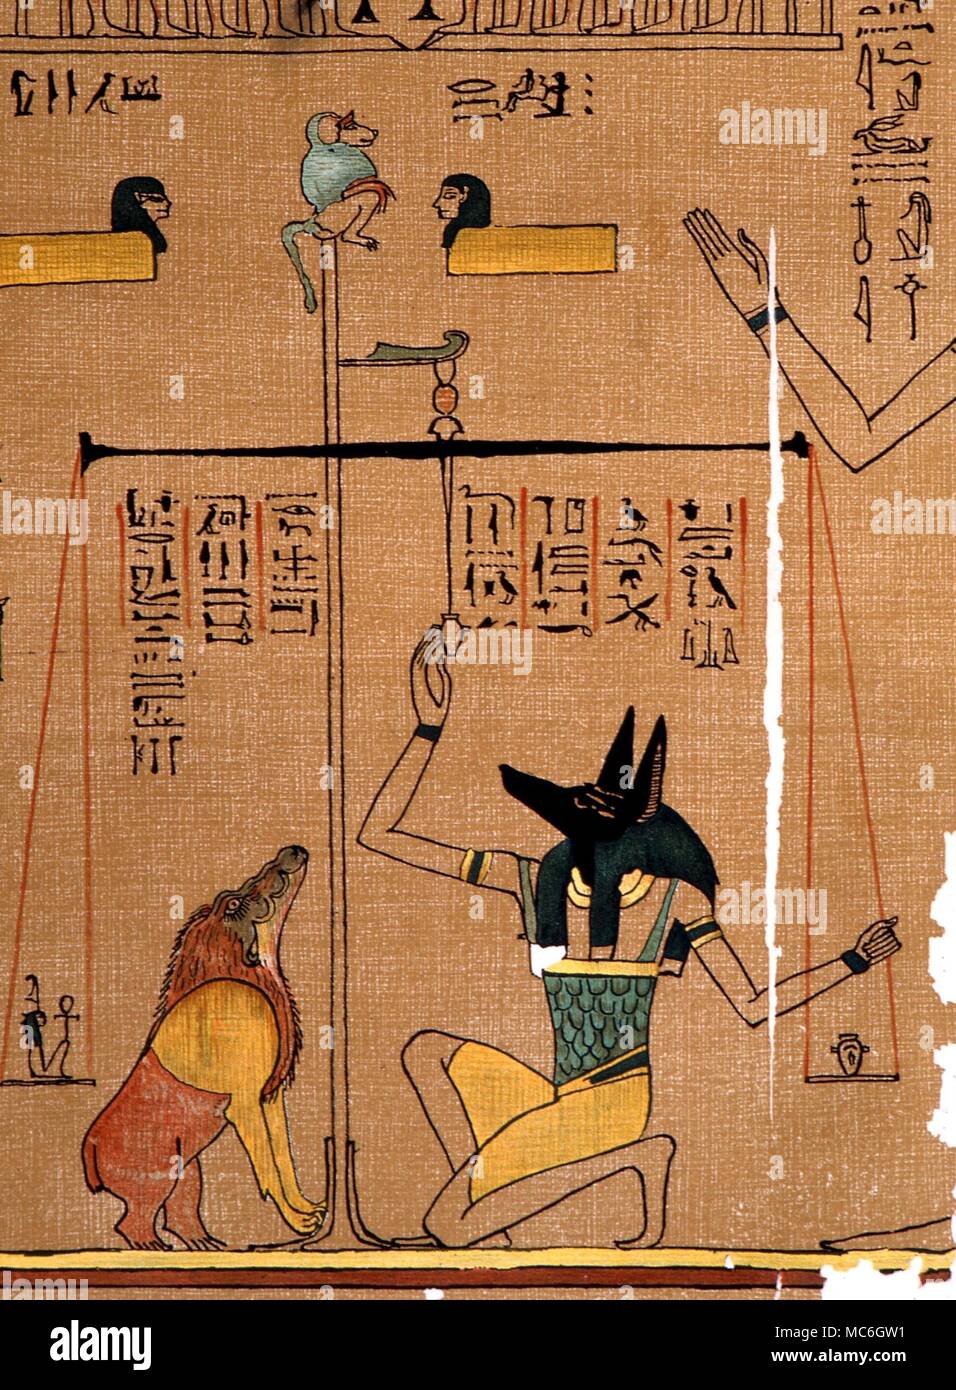 La mythologie égyptienne - Deatil du Livre des morts égyptien, avec un poids d'Anubis à tête de chacal le coeur du nouveau parti, surveillé par Amemit. Le fleuron du babouin est presque certainement un symbole de temps Banque D'Images